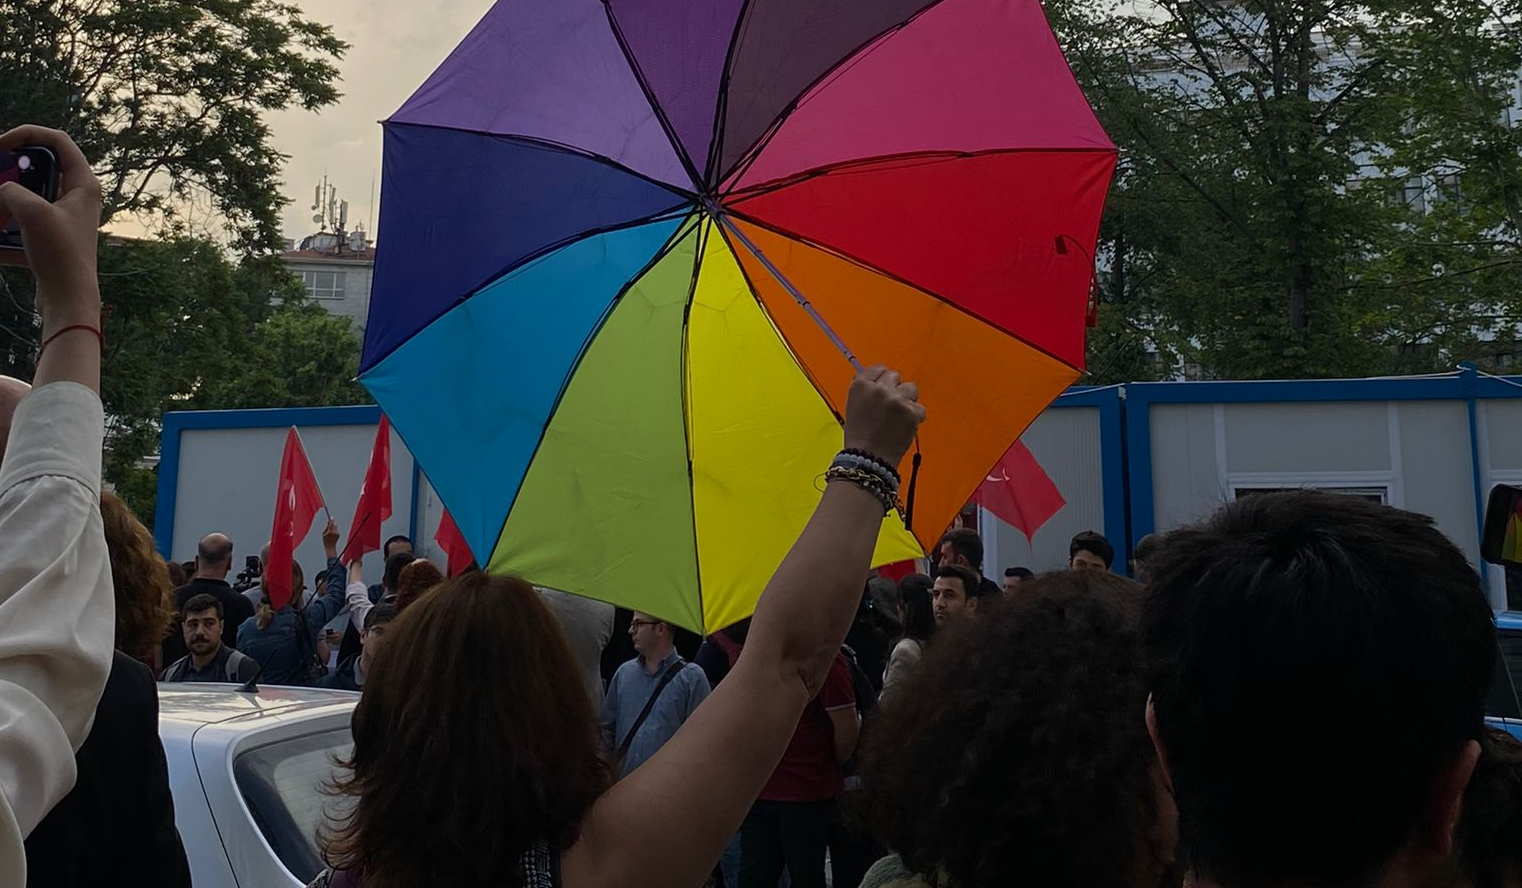 Vatan Partisi iş başında: Ankara Barosu’nun Onur Ayı etkinliğini hedef gösterdiler | Kaos GL - LGBTİ+ Haber Portalı Haber